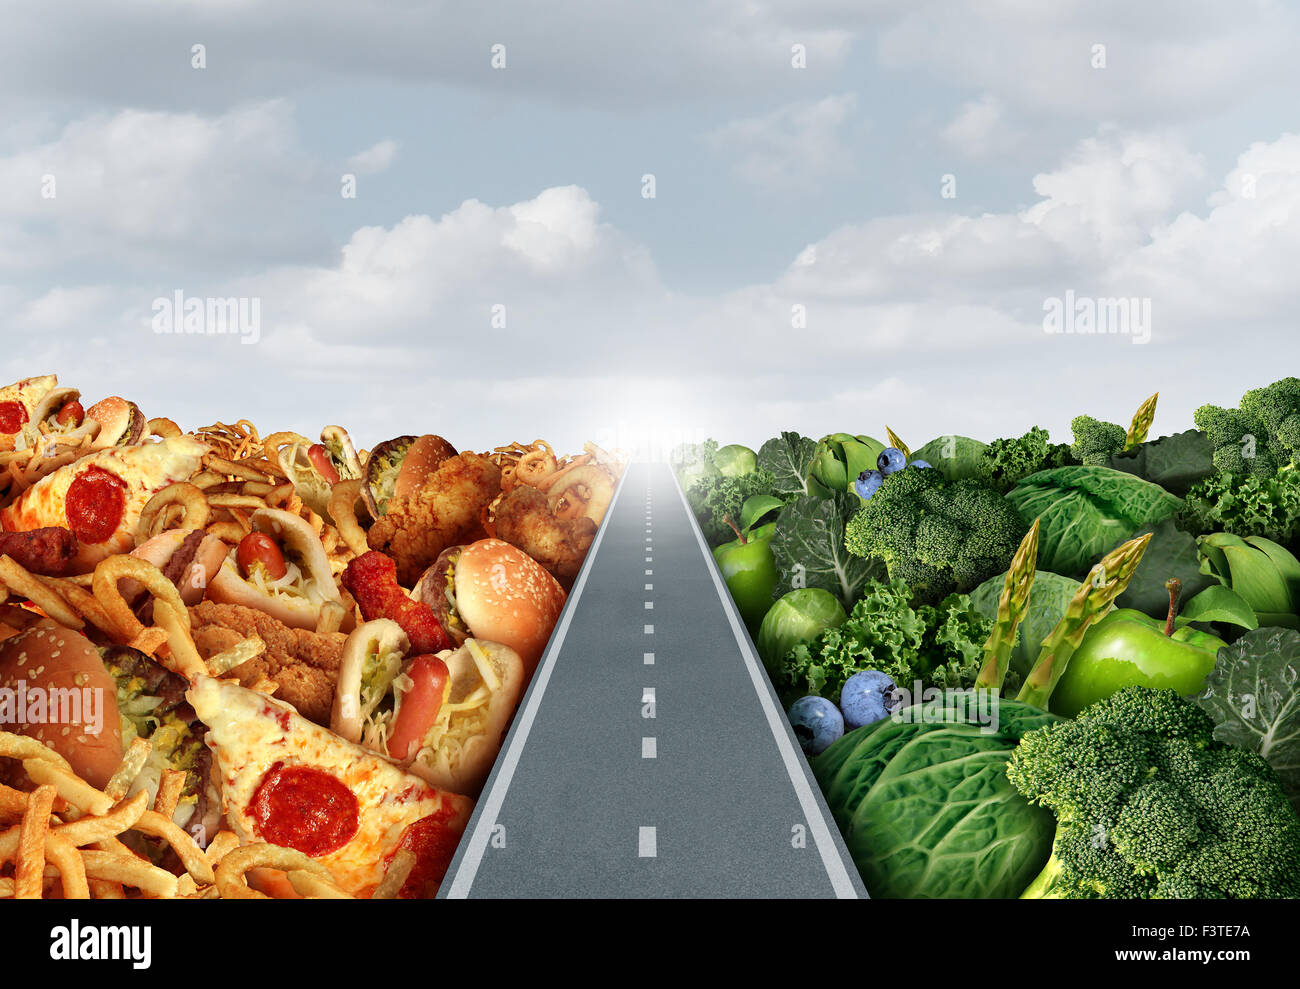 L'alimentation ou la nutrition concept de vie symbole de décision et des choix alimentaires sains de dilemme bon fruits et légumes frais ou Banque D'Images